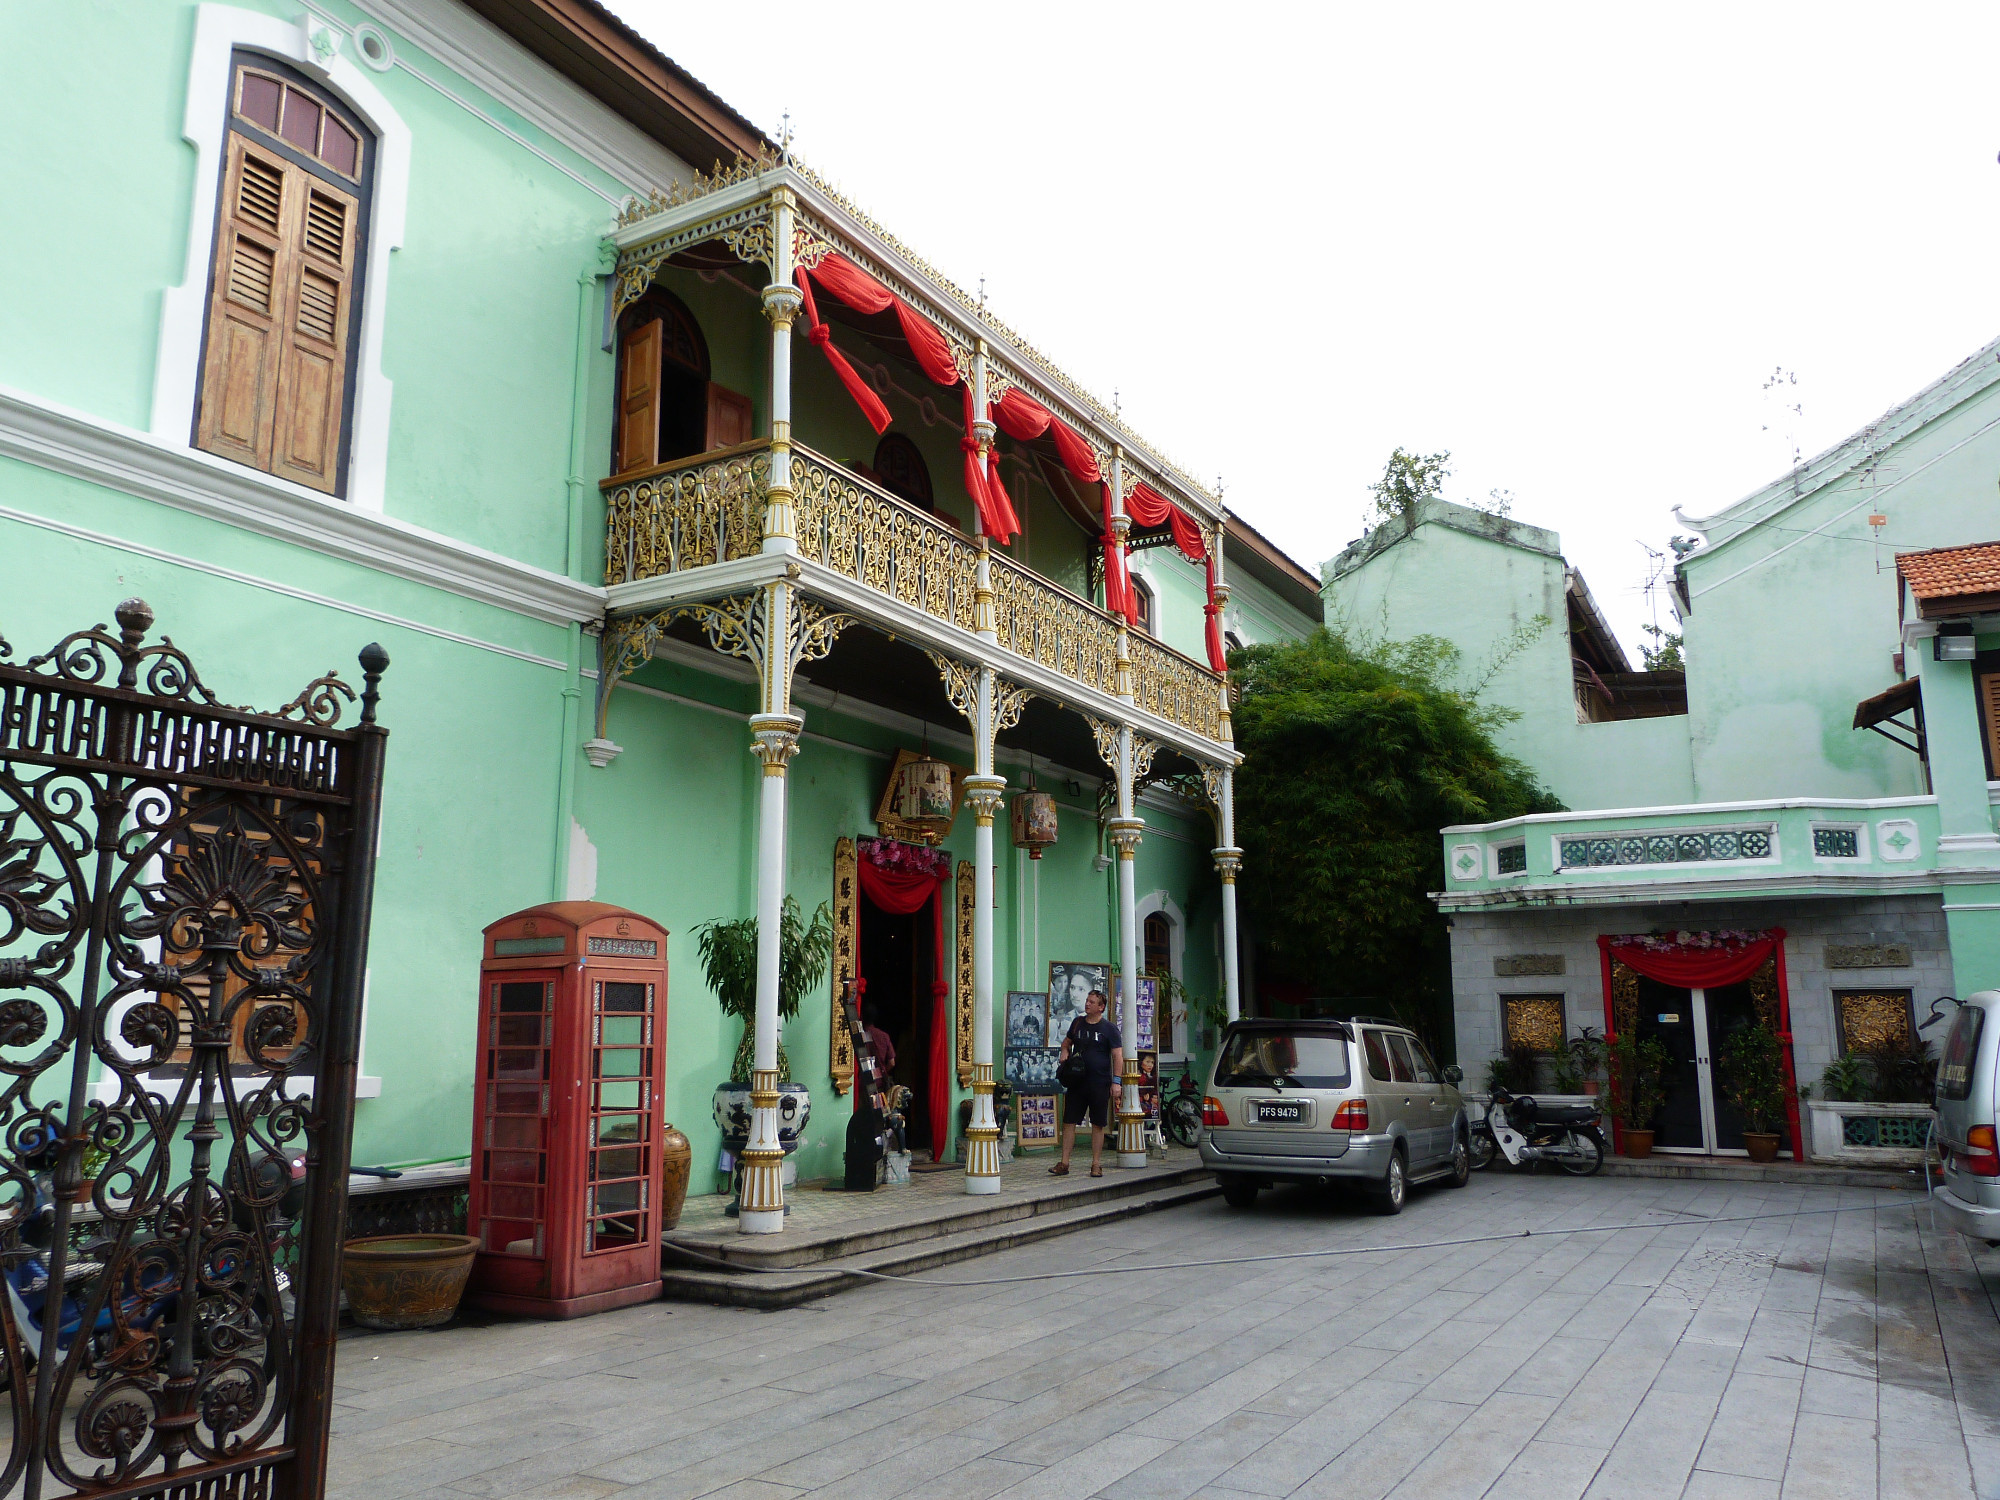 Pinang Peranakan Mansion<br/>
Museum